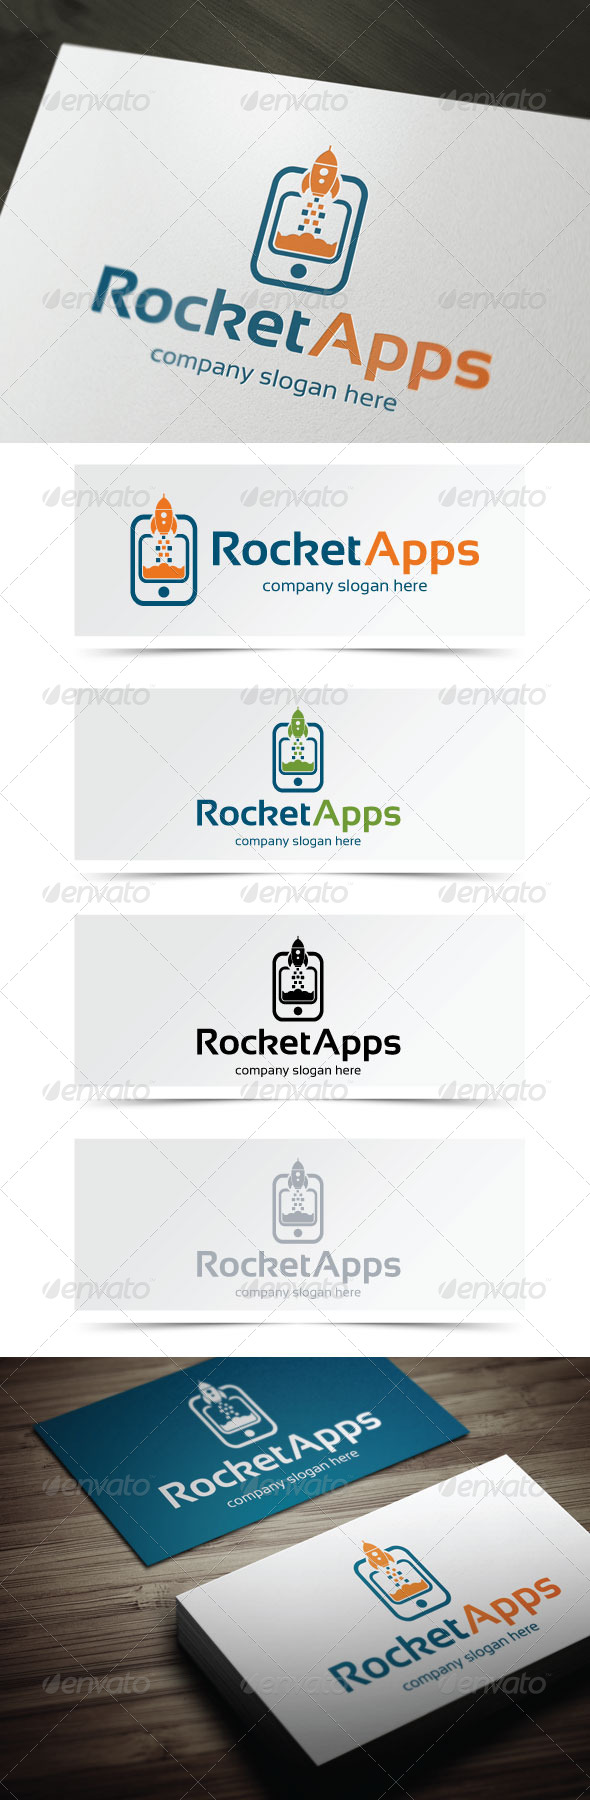 Rocket Apps